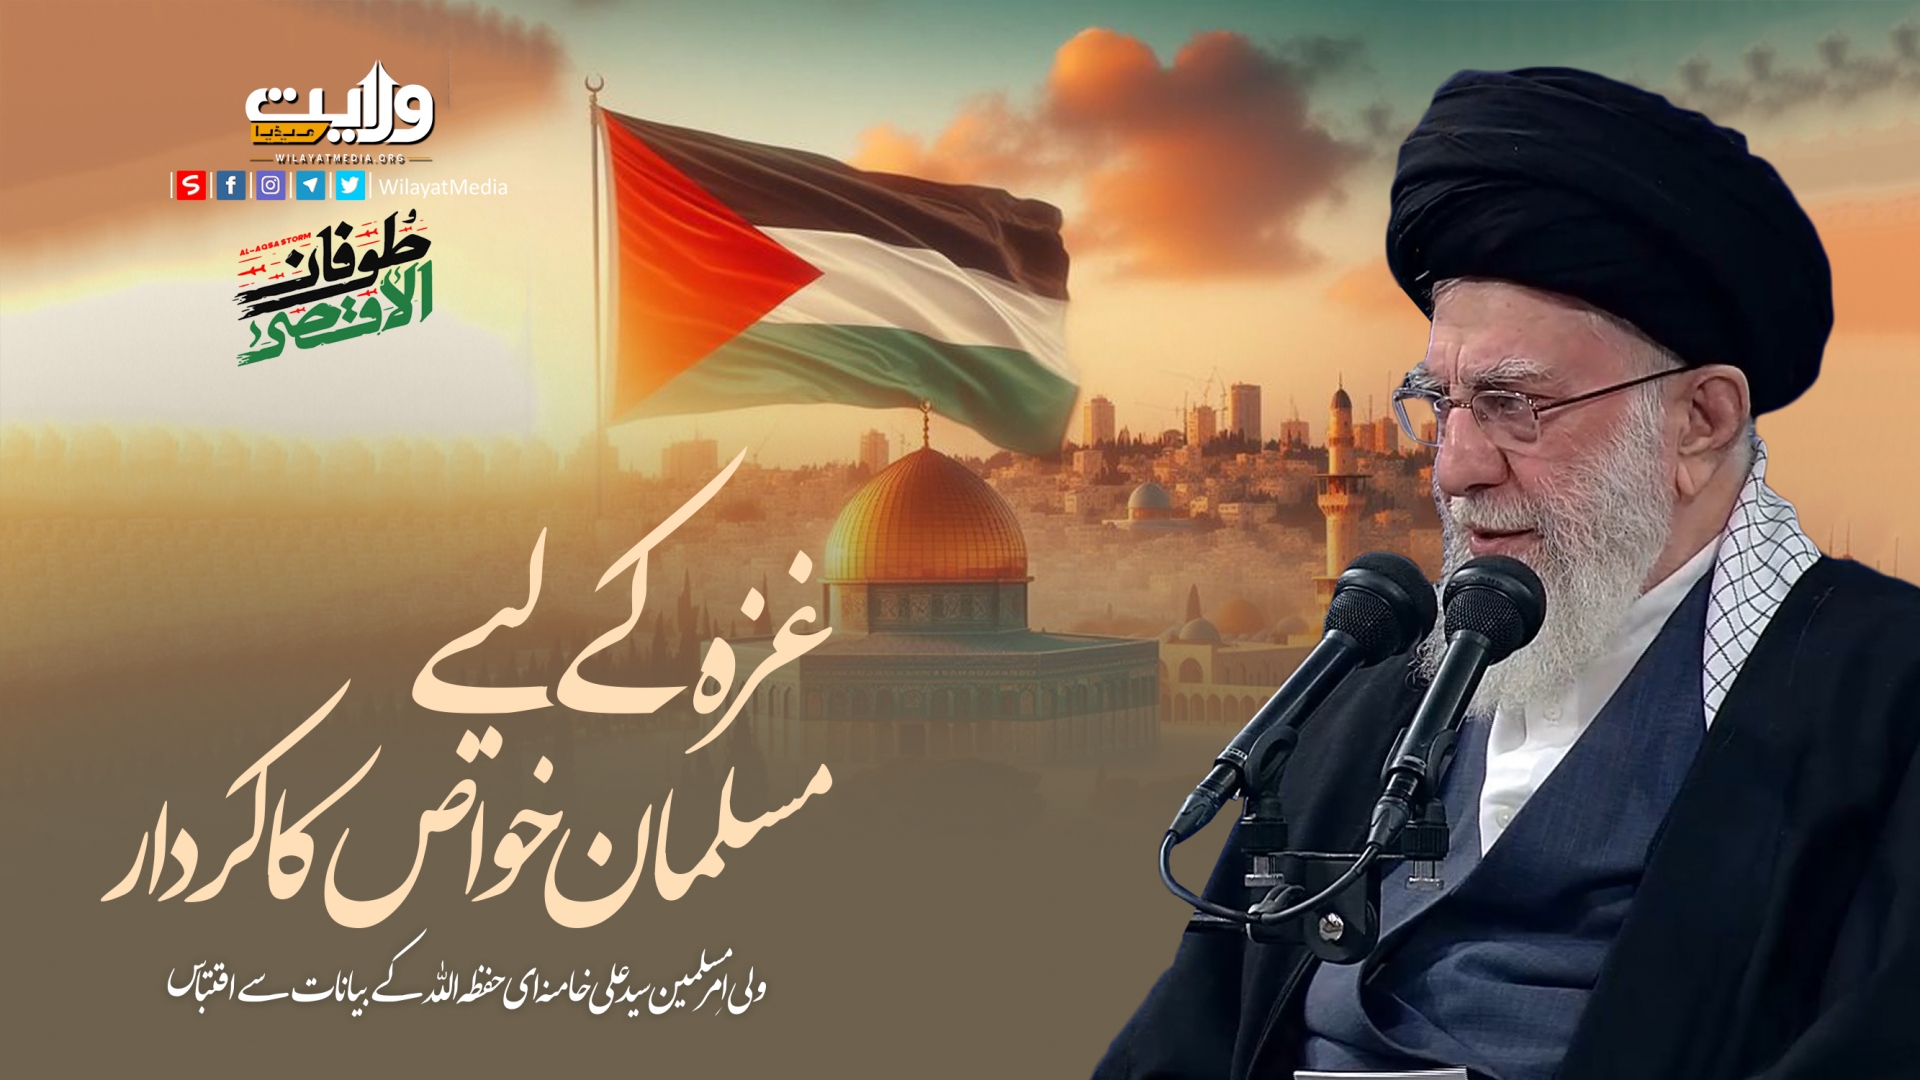 غزہ کے لیے مسلمان خواص کا کردار | امام سید علی خامنہ ای | Farsi Sub Urdu